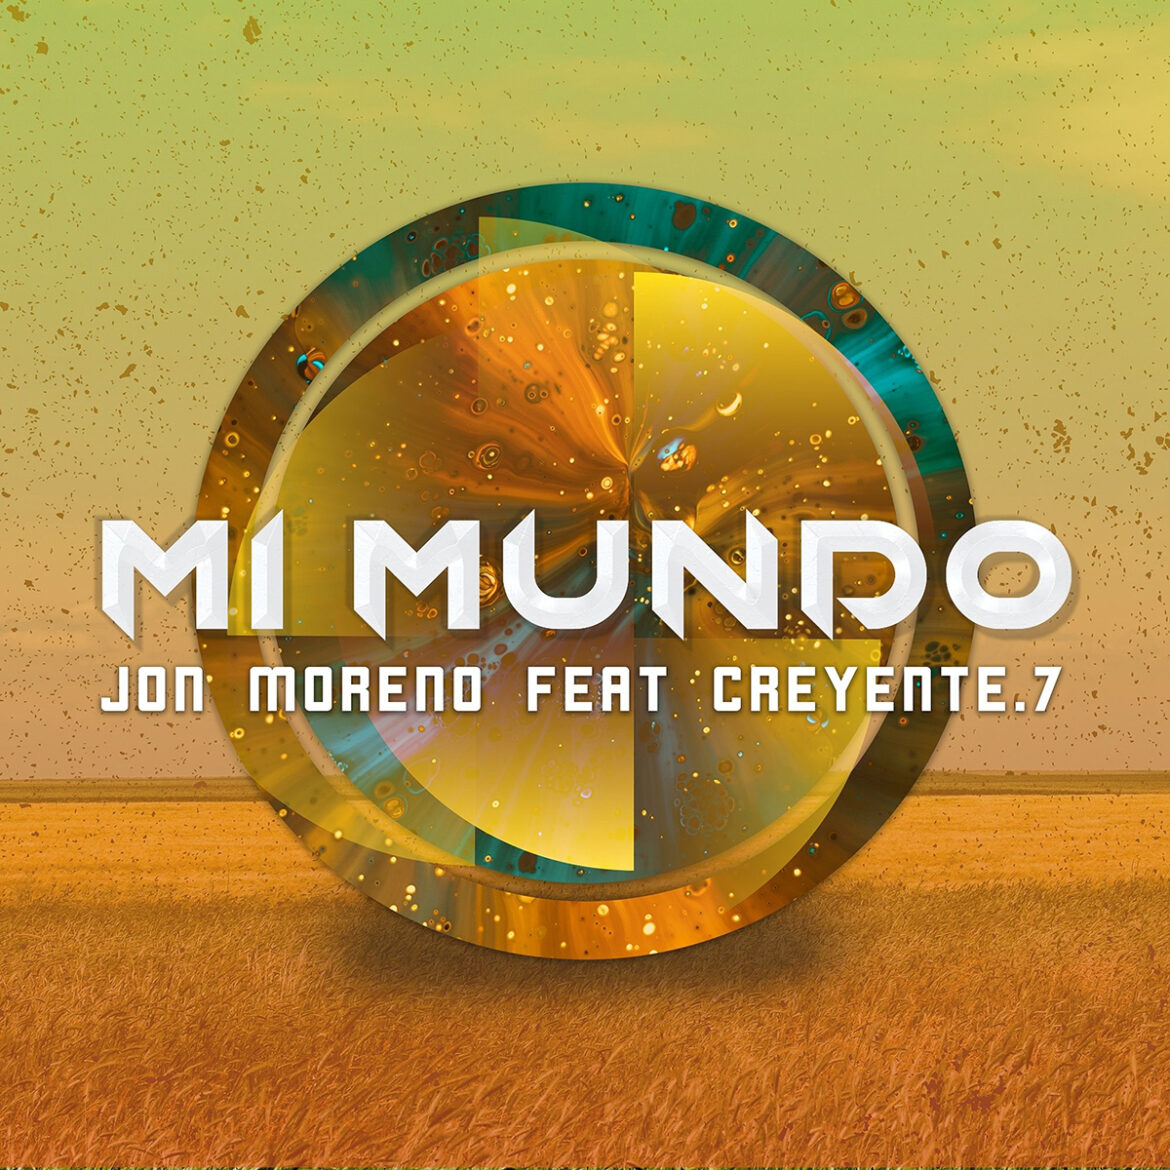 Una gran combinación de música y talento es “Mi Mundo” Una colaboración de los colombianos Jon Moreno Ft Creyente.7